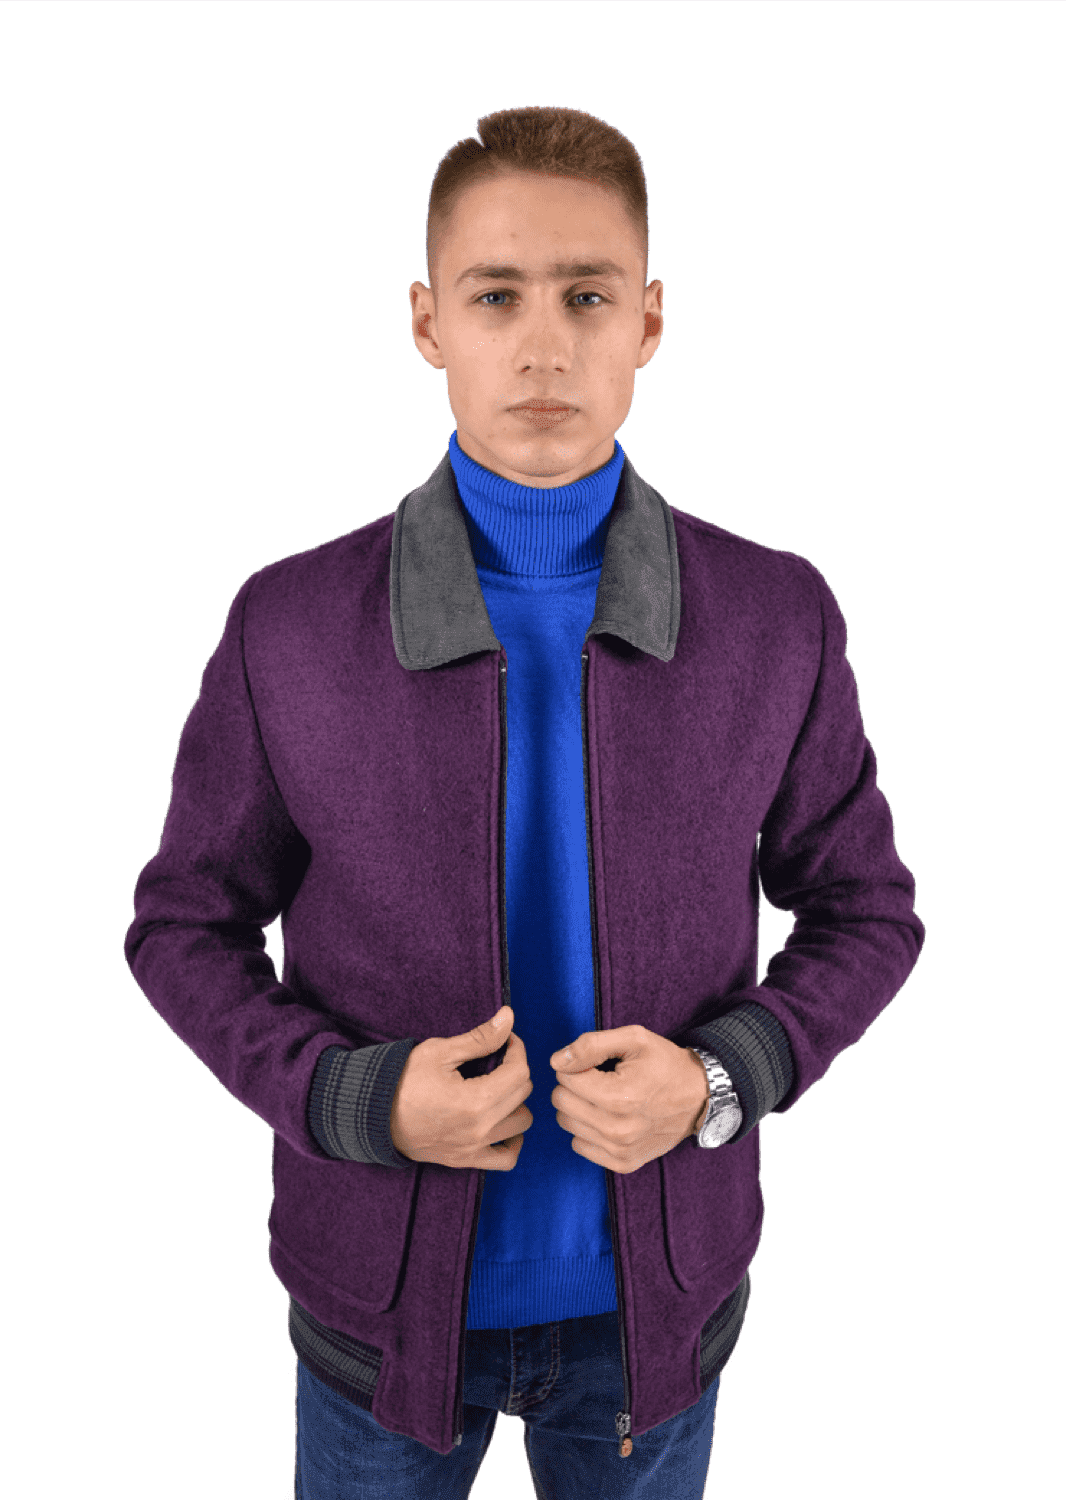 Куртка пилот с отложенным воротником фиолетовая (50) PIZHON 3820-04, размер 50, цвет фиолетовый